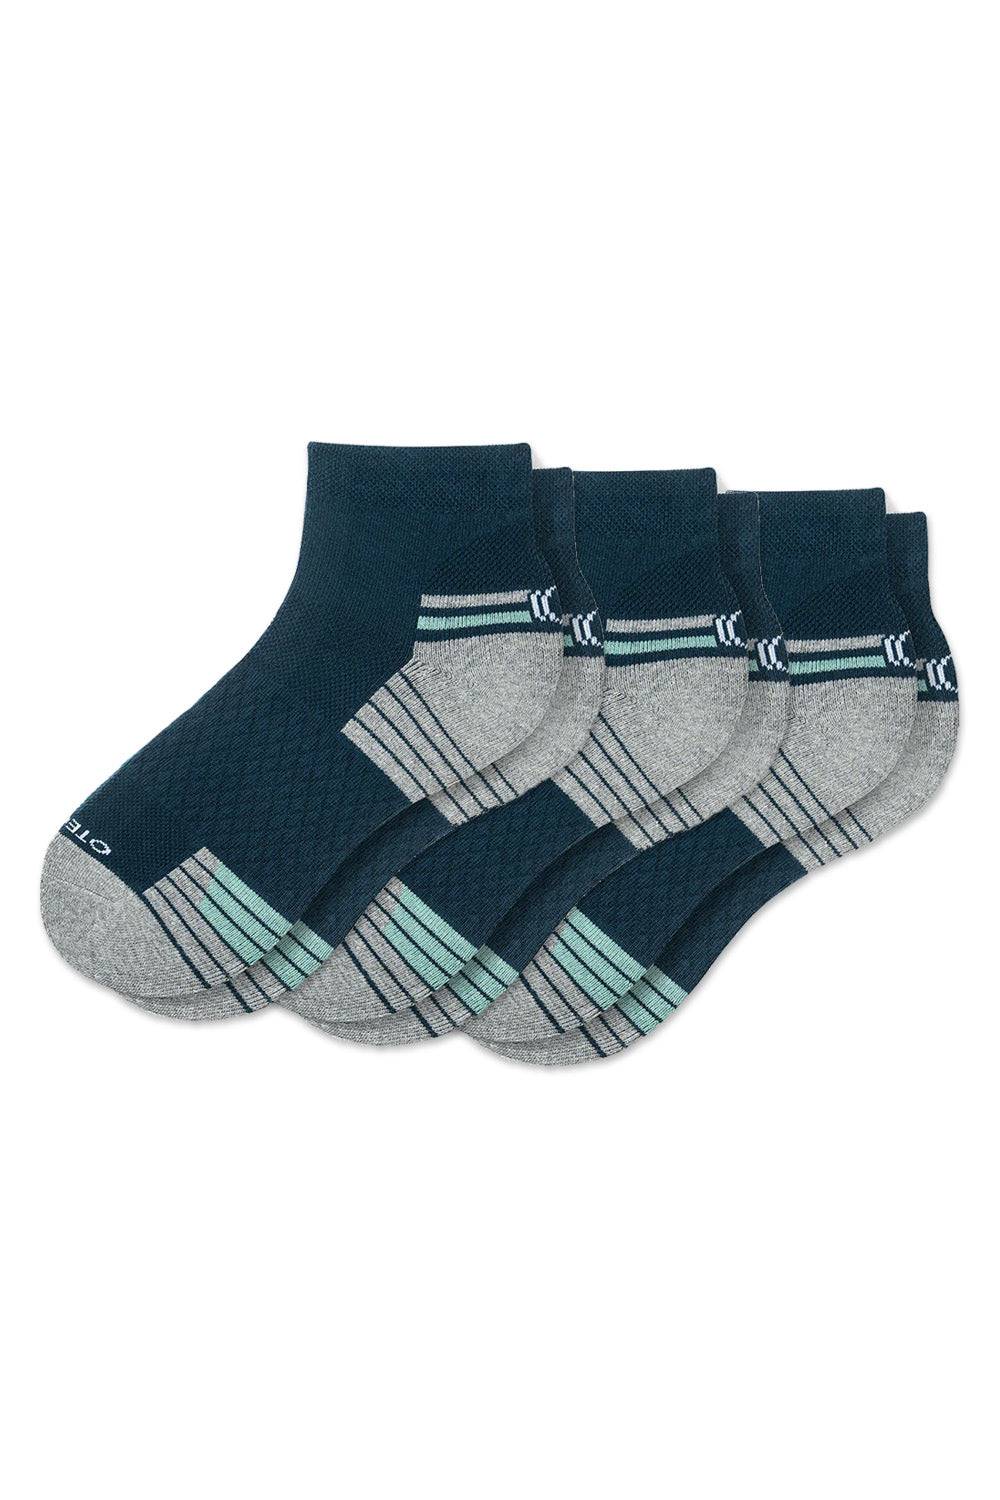 Performance Quarter Socks Pack of 3